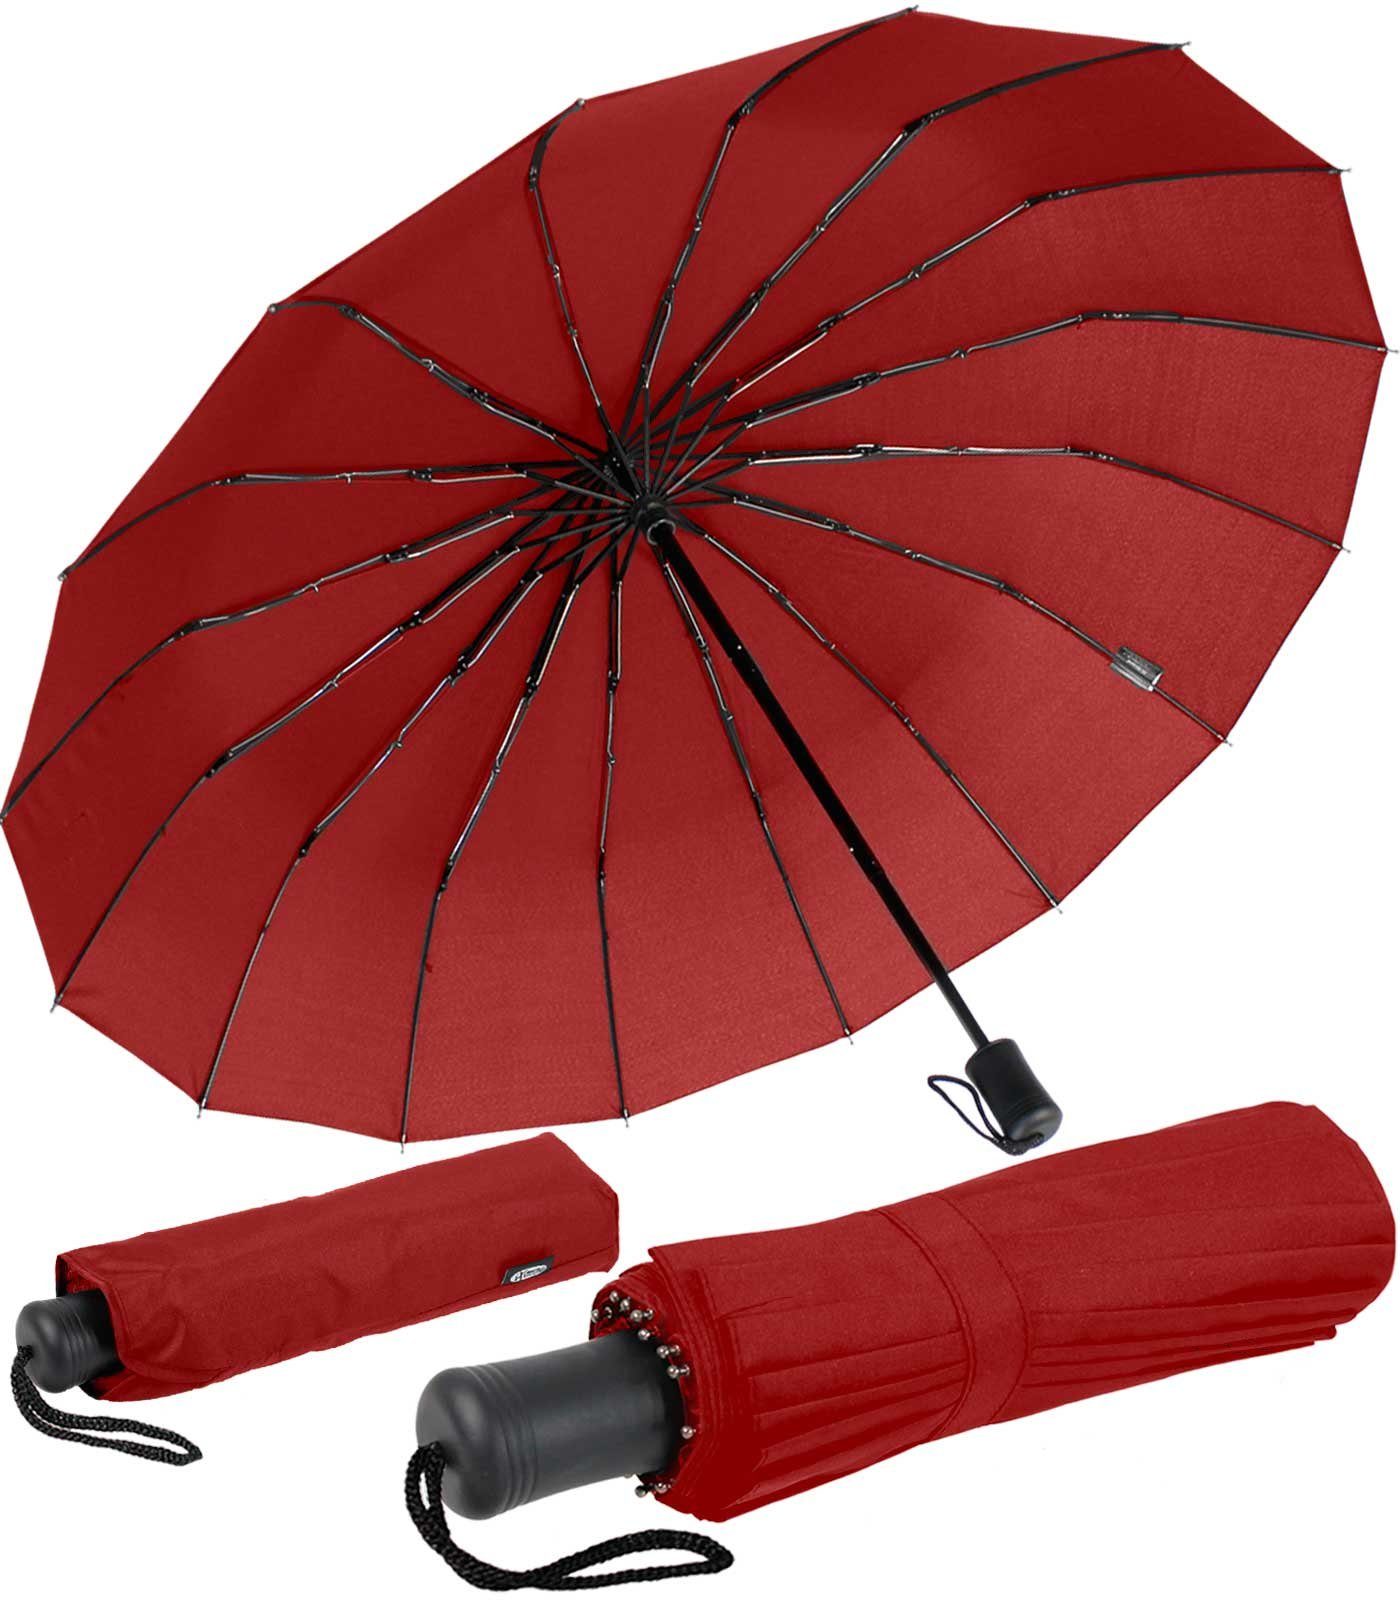 und und iX-brella mit extravagant extra stabil farbenfroh, auffällig Taschenregenschirm 16 dunkelrot Streben Mini